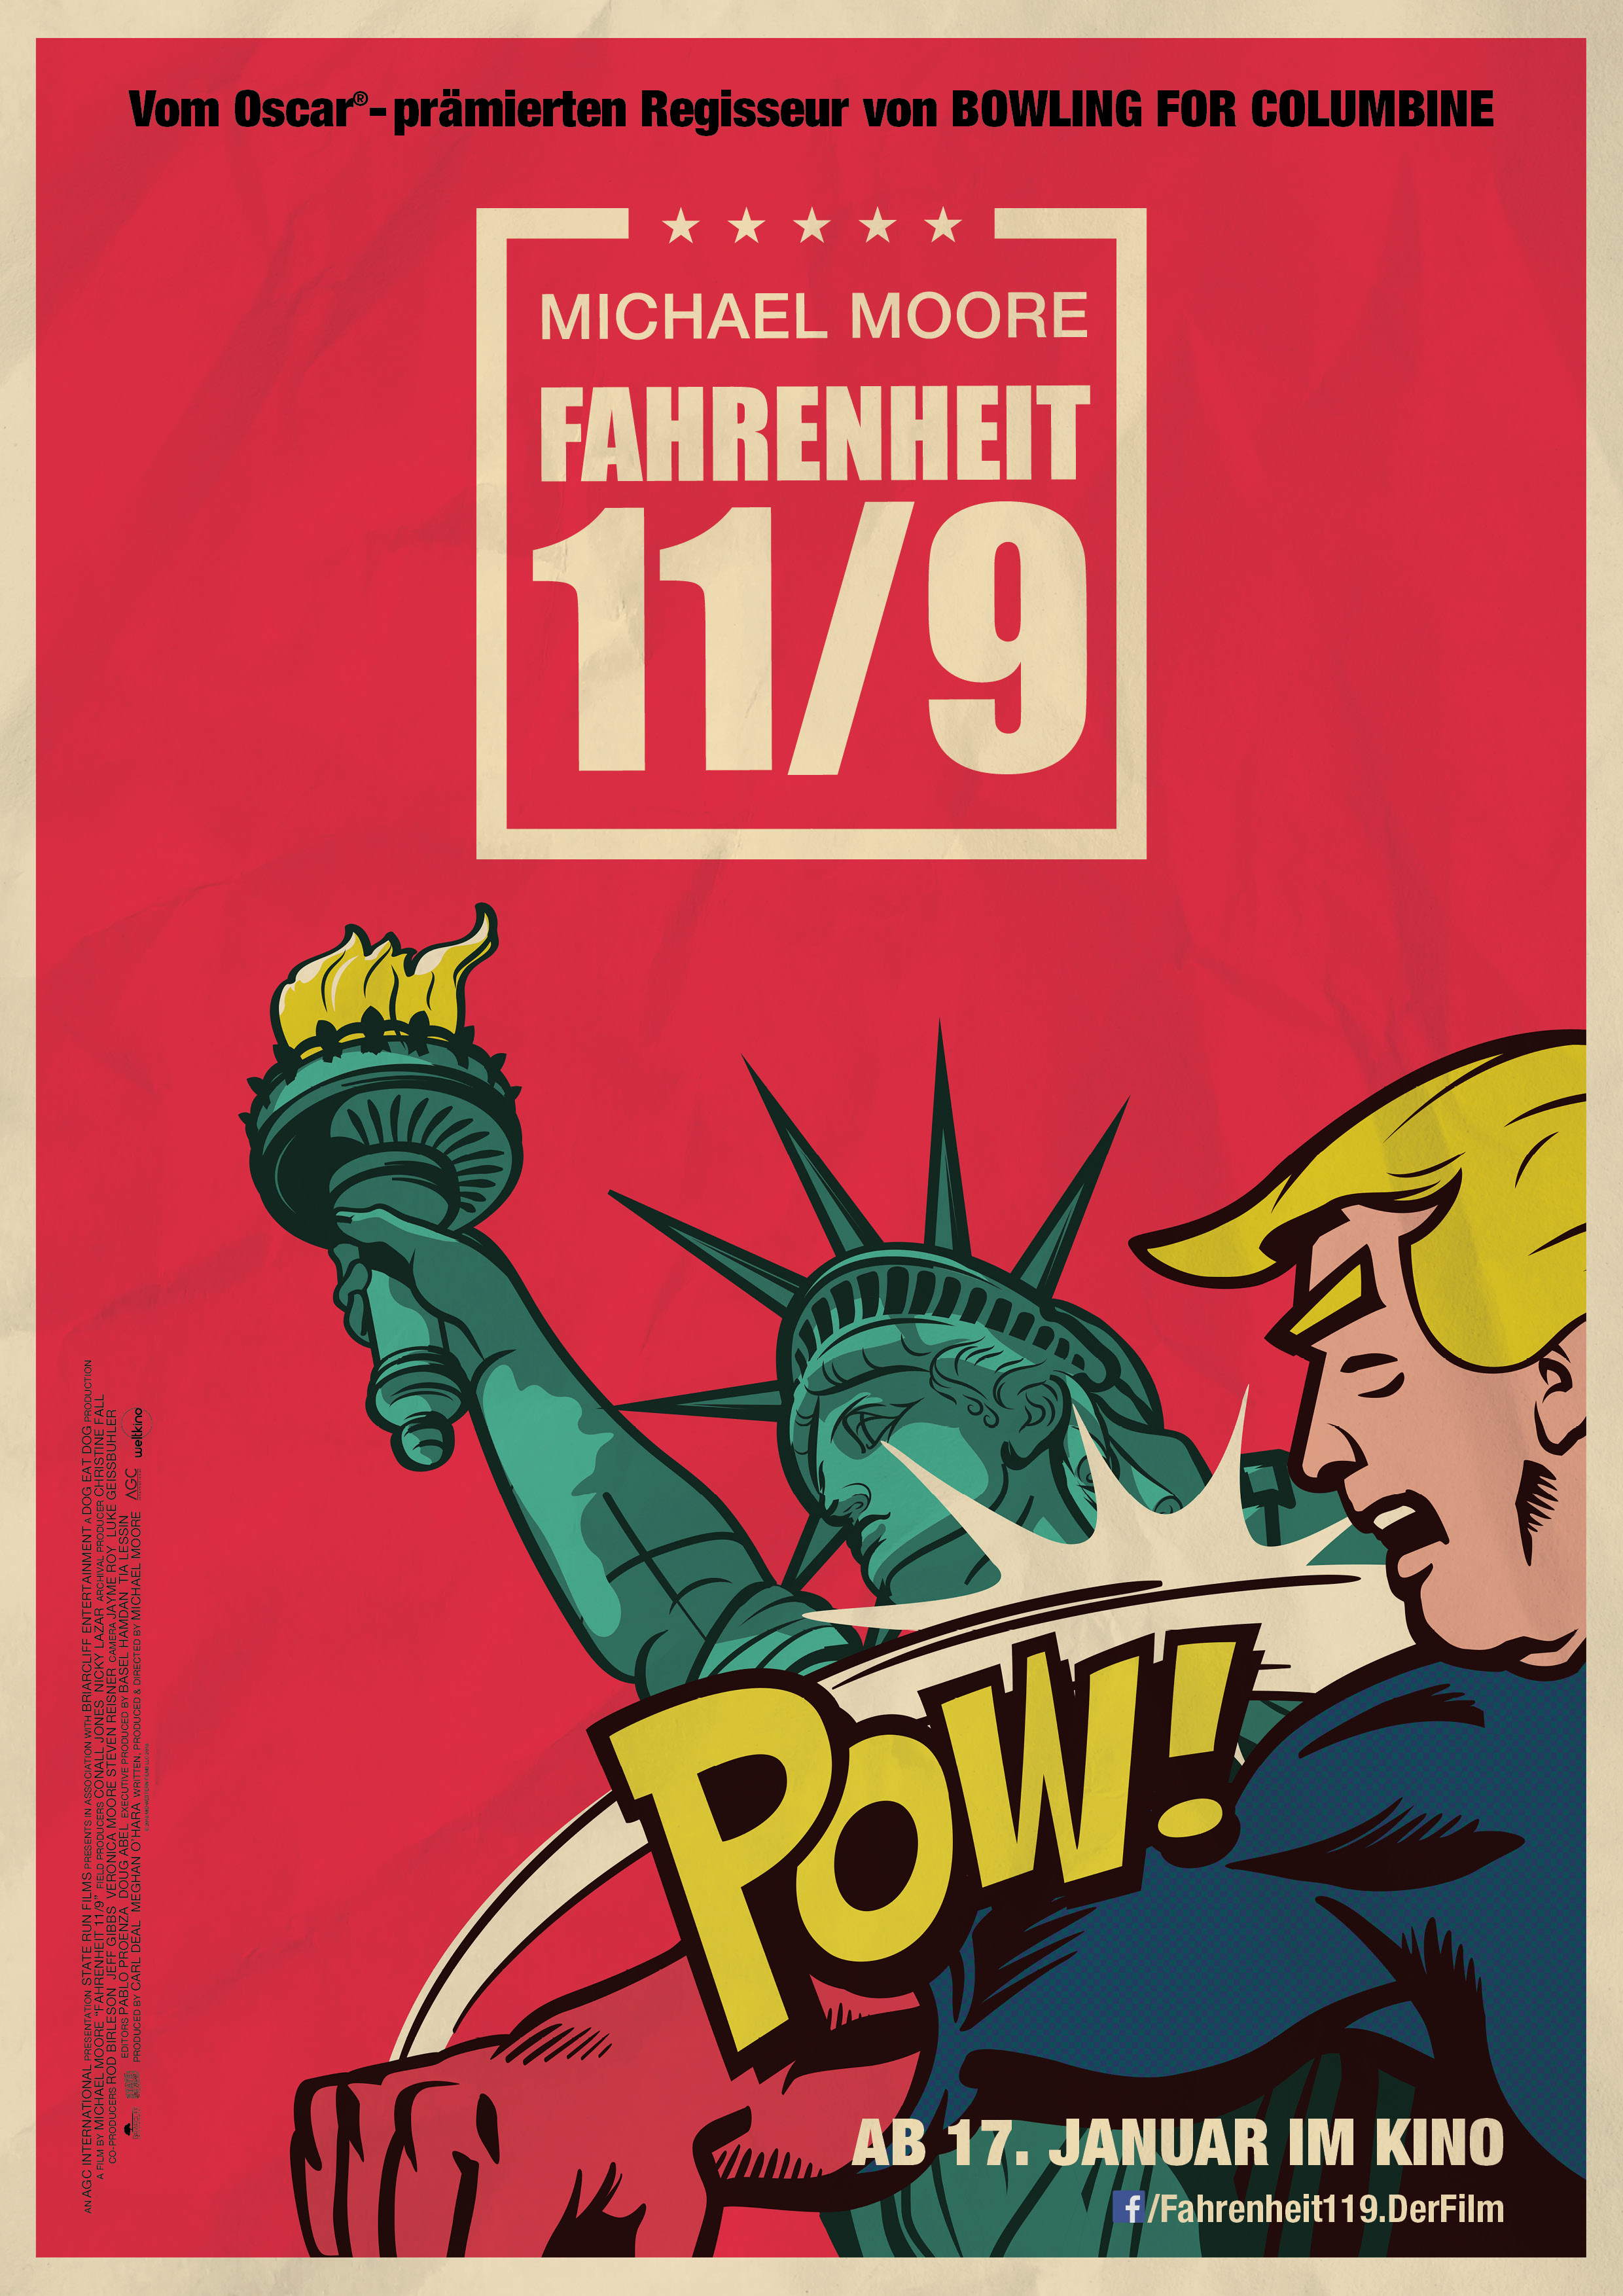 Plakat zu Fahrenheit 11/9; Copyright: CRAUBNER + HARTMANN/Weltkino